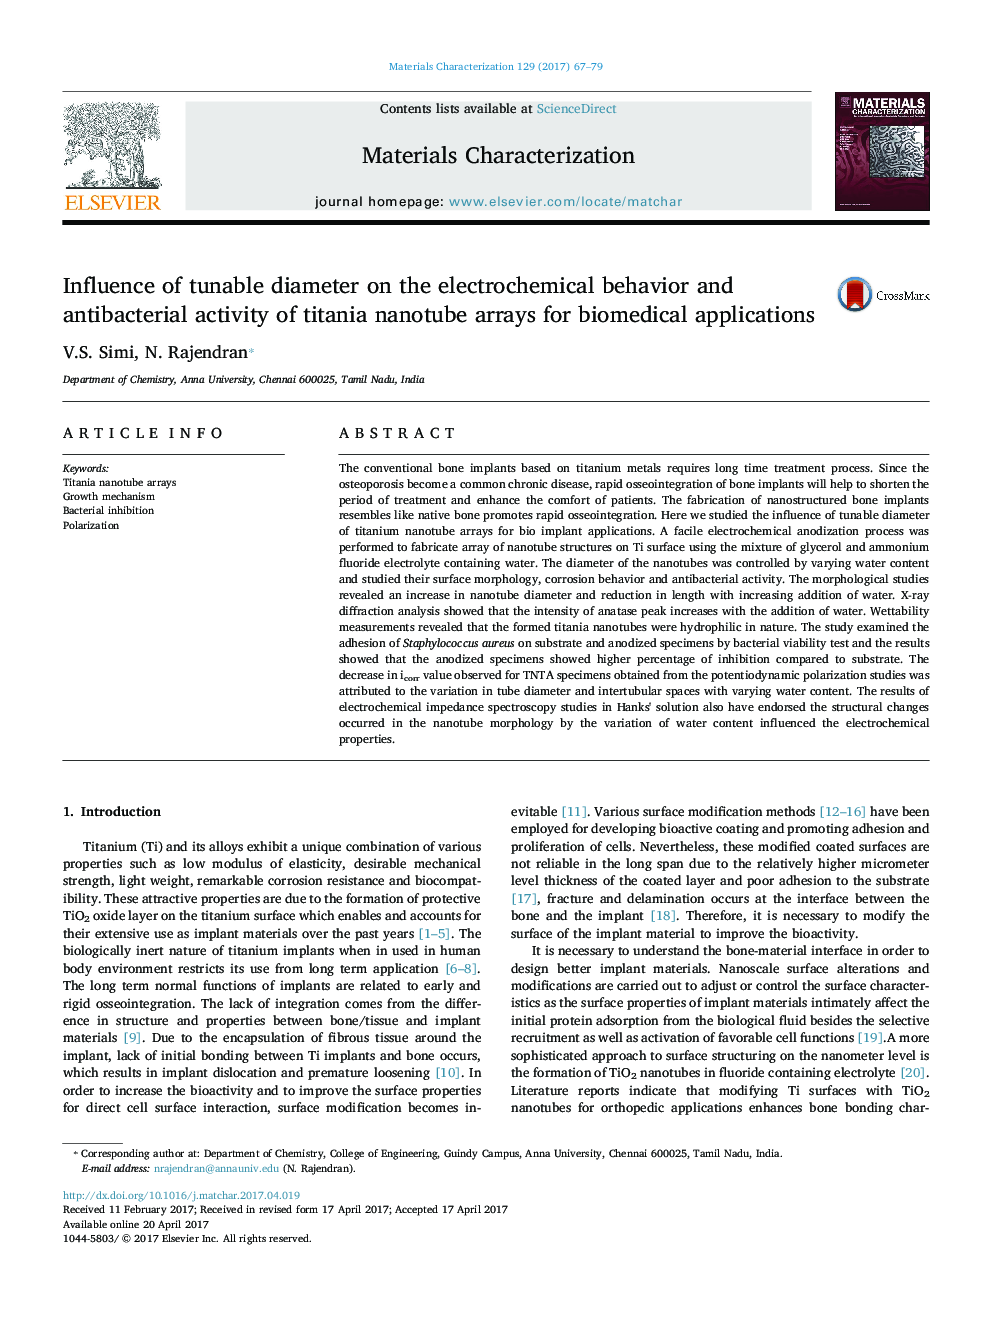 تاثیر قطر قابل تنظیم بر رفتار الکتروشیمیایی و فعالیت ضد باکتری آرایه های نانوتیوب تیتانیوم برای کاربردهای بیومدیکال 